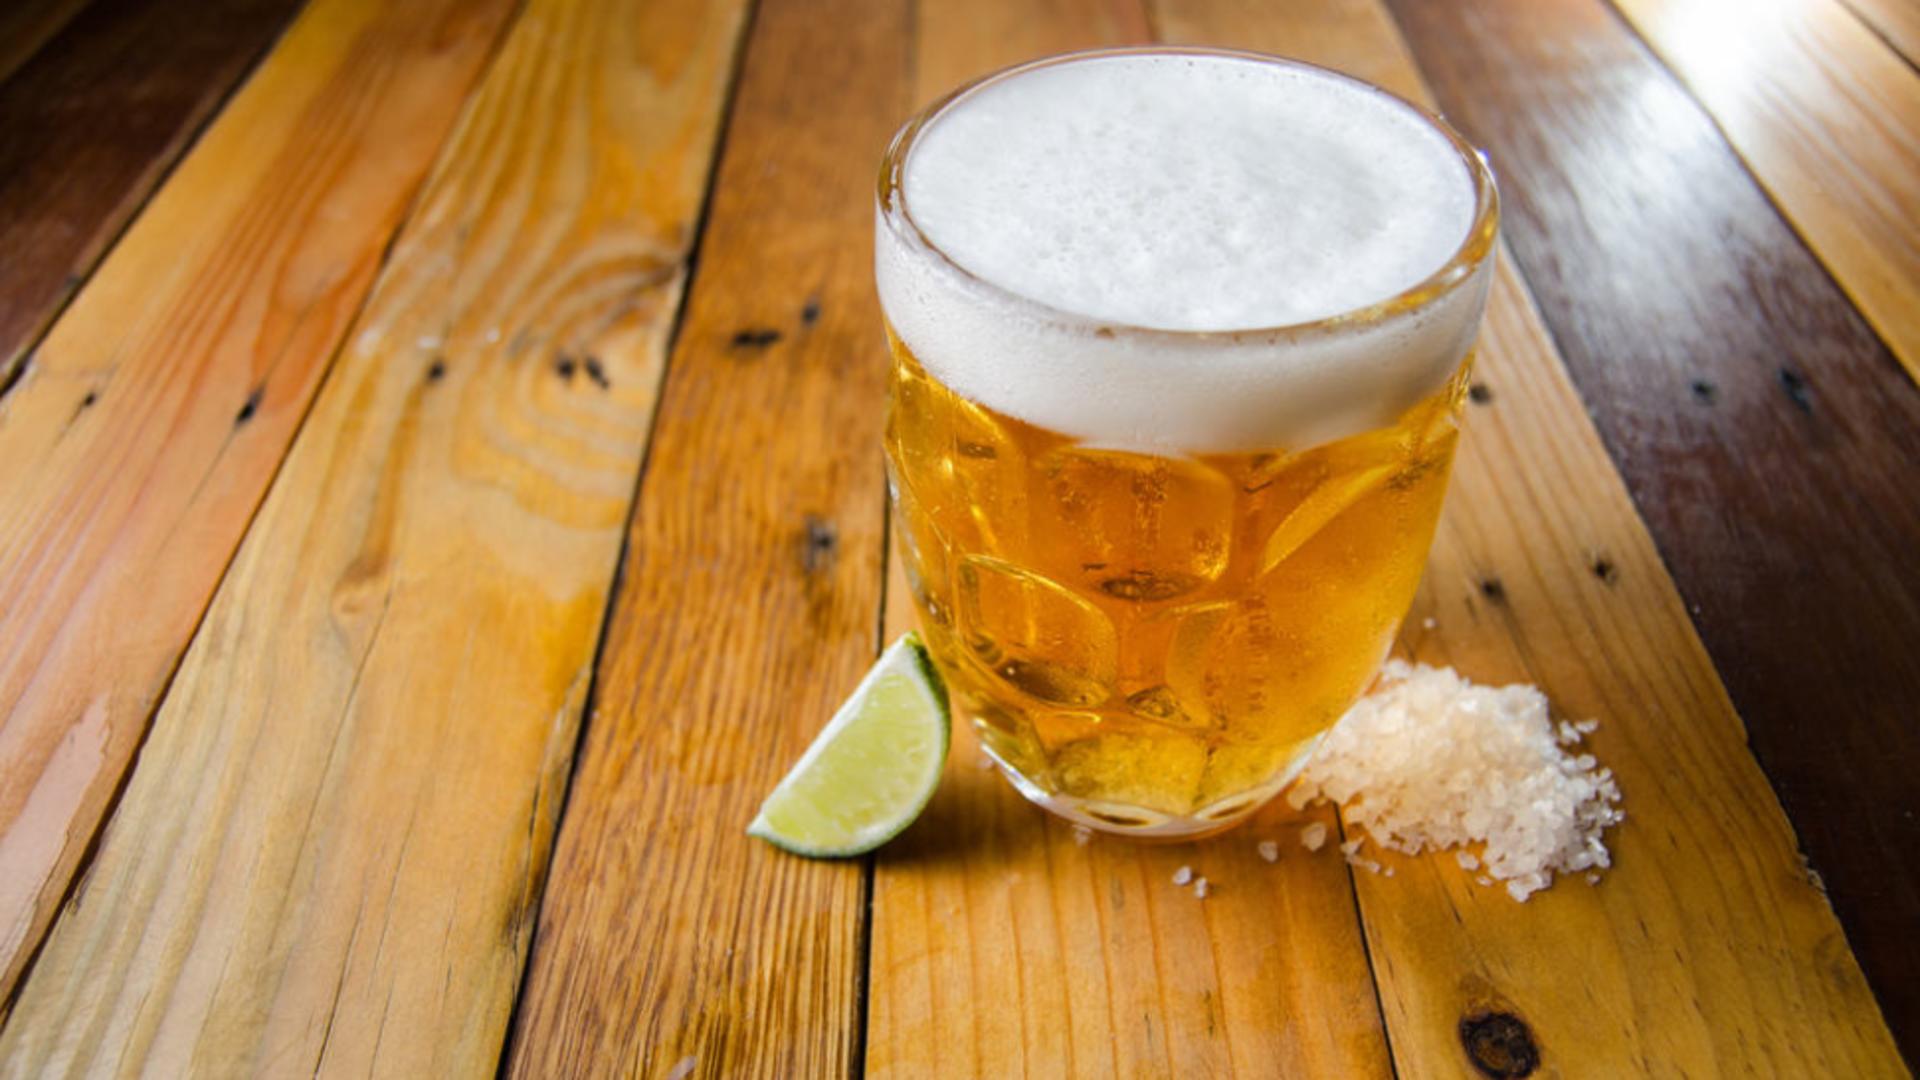 De ce să pui sare în bere: Secretul ingredientului surprinzător care îți va transforma experiența de degustare